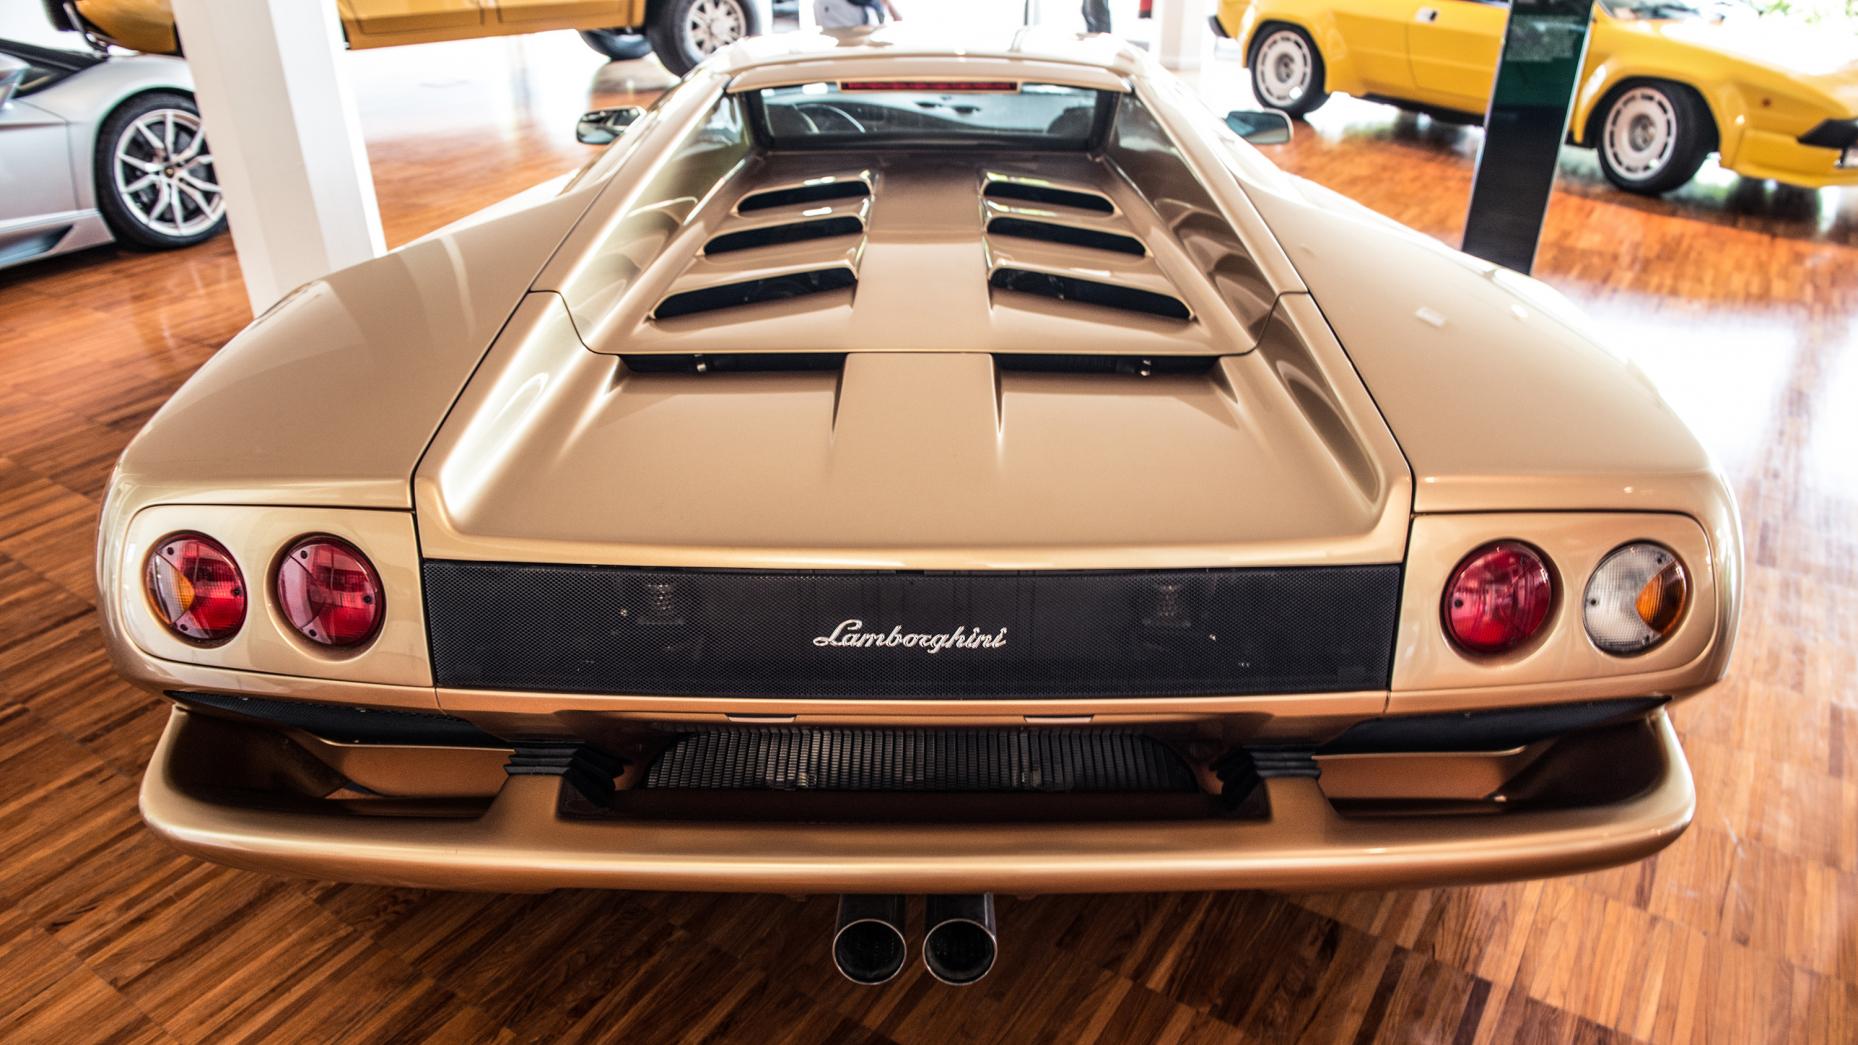 
Lamborghini Diablo: Hầu hết các mẫu xe Diablo đều được Lamborghini sản xuất từ năm 1993 đến 2001, trang bị hệ thống dẫn động 4 bánh. Xe sở hữu khối động cơ V12 dung tích 5,7 lít, có công suất 492 mã lực và mô-men xoắn cực đại 580 Nm.
